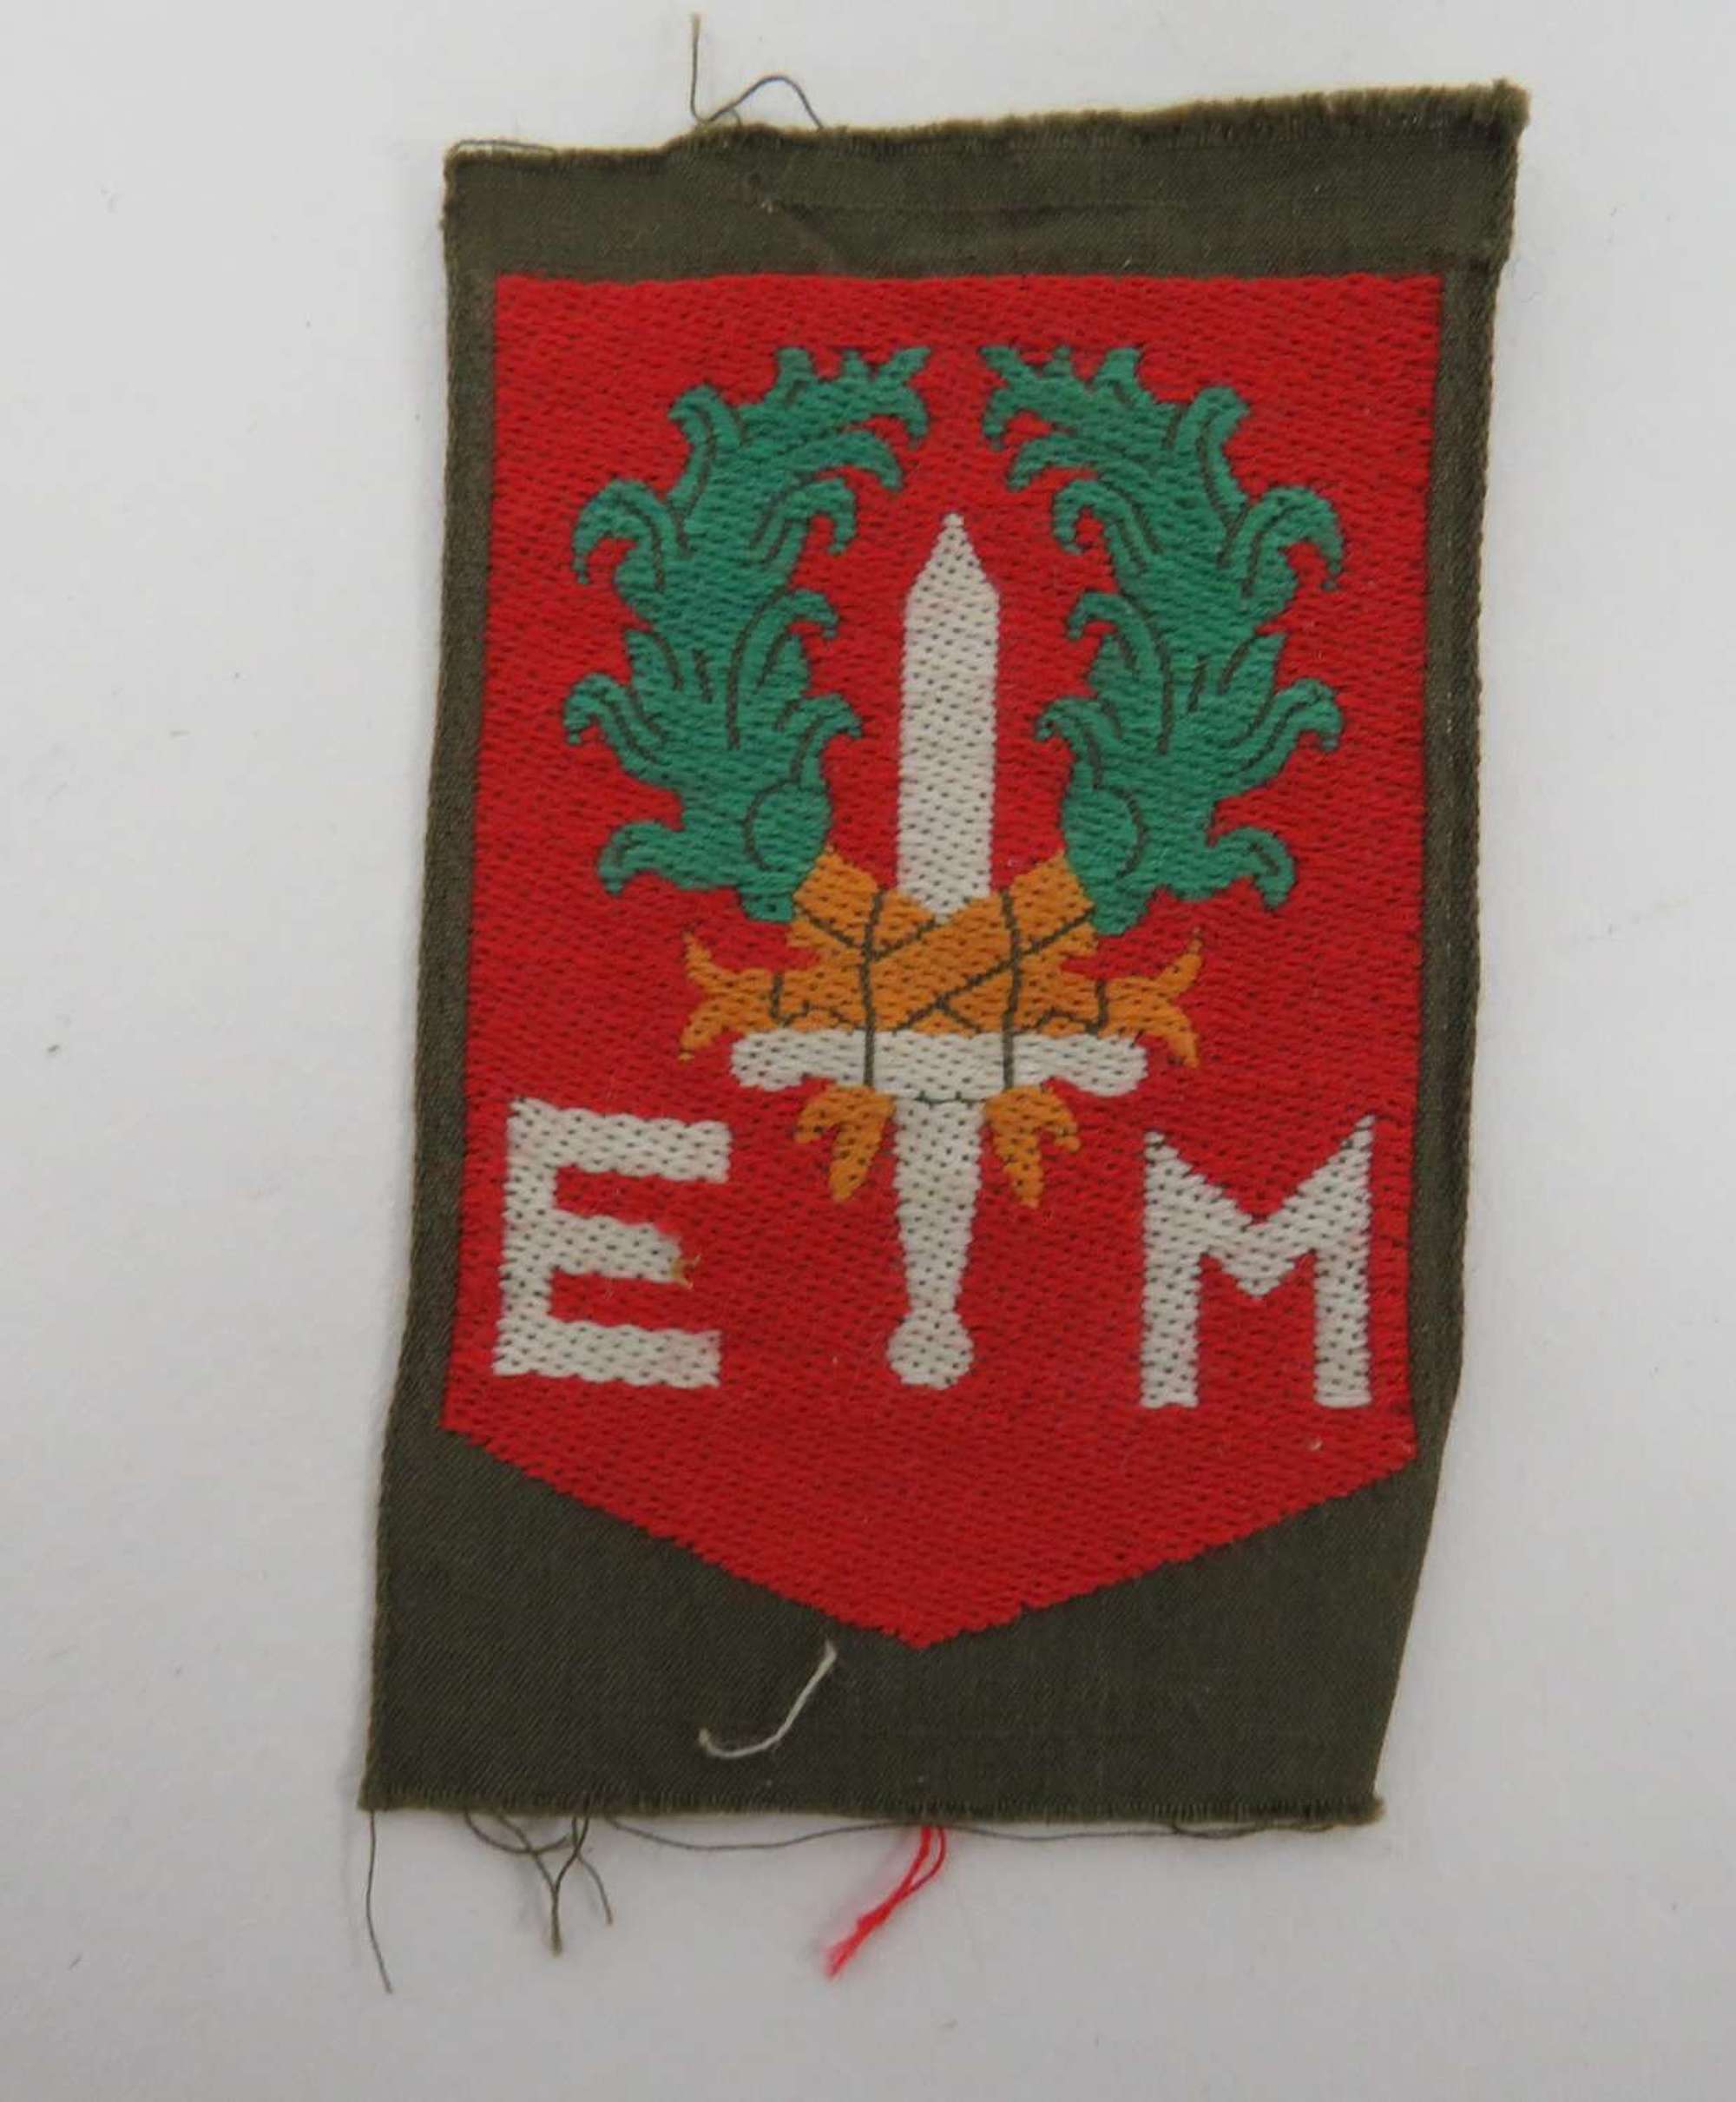 1st Netherlands Division Formation Badge